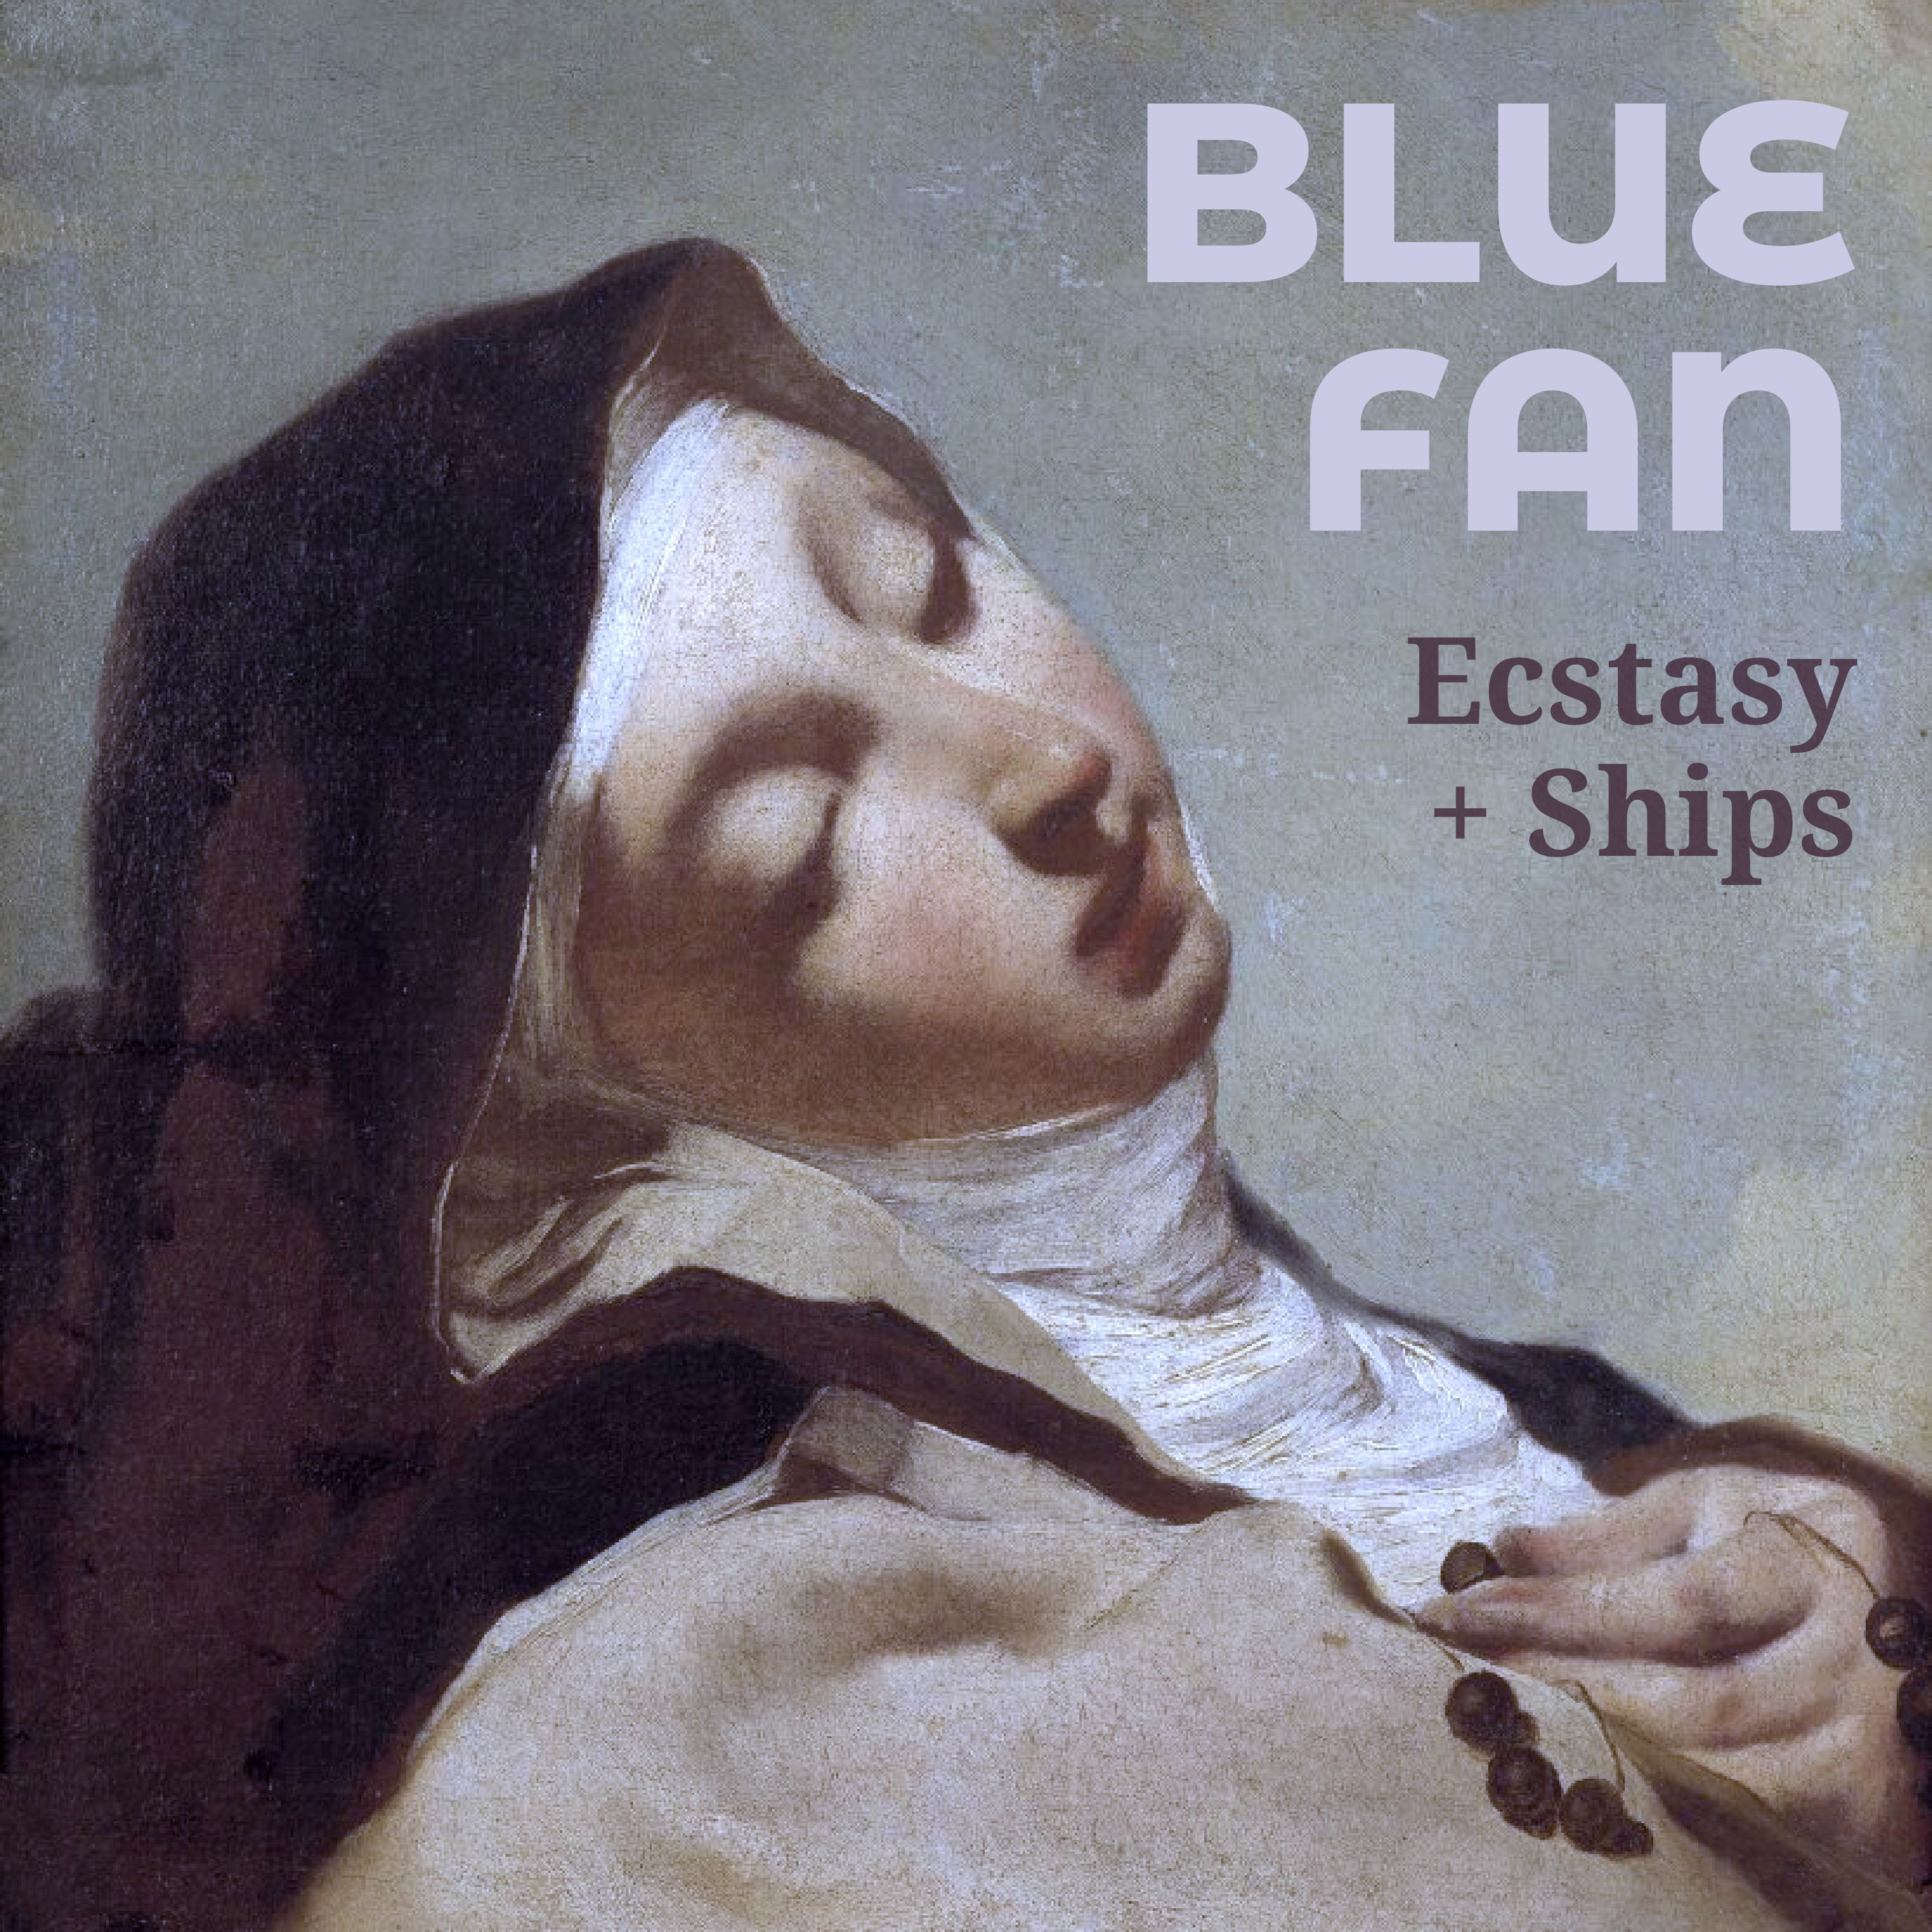 Ecstasy + Ships (single)